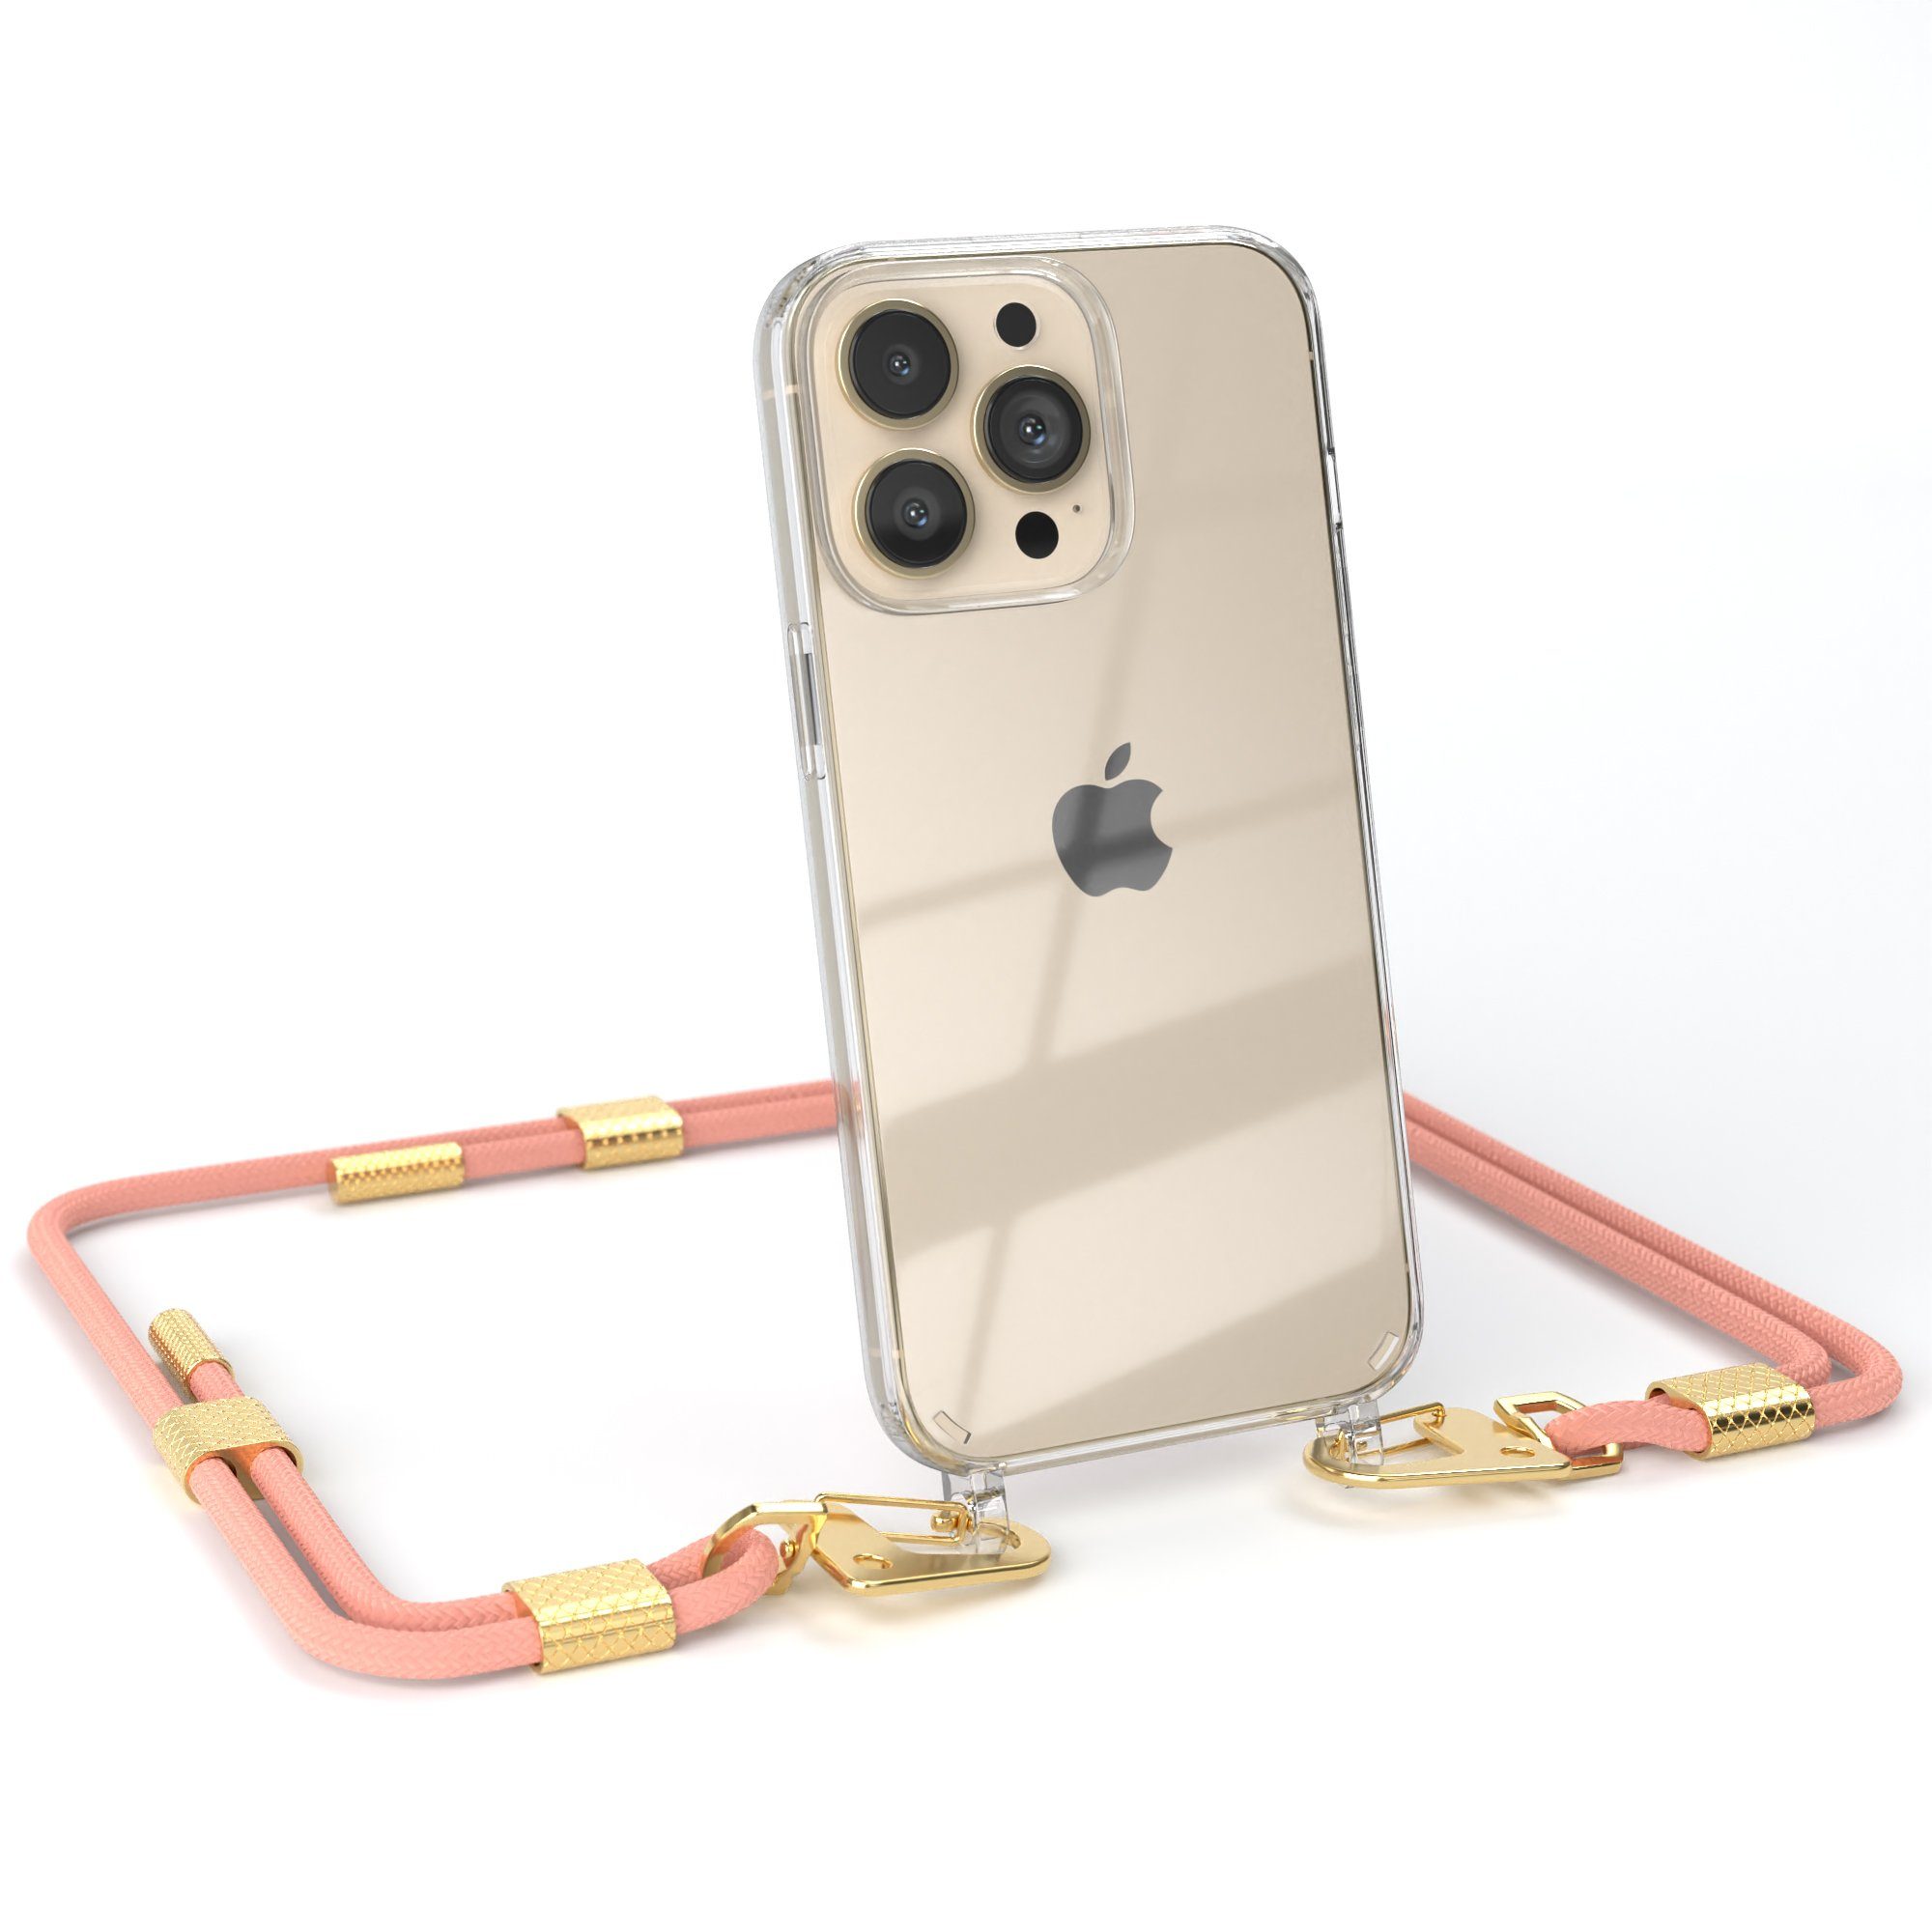 EAZY CASE Handykette Silikonhülle mit Kette für Apple iPhone 13 Pro 6,1 Zoll, Handytasche durchsichtige Silikon Hülle mit Umhängeband Altrosa Coral